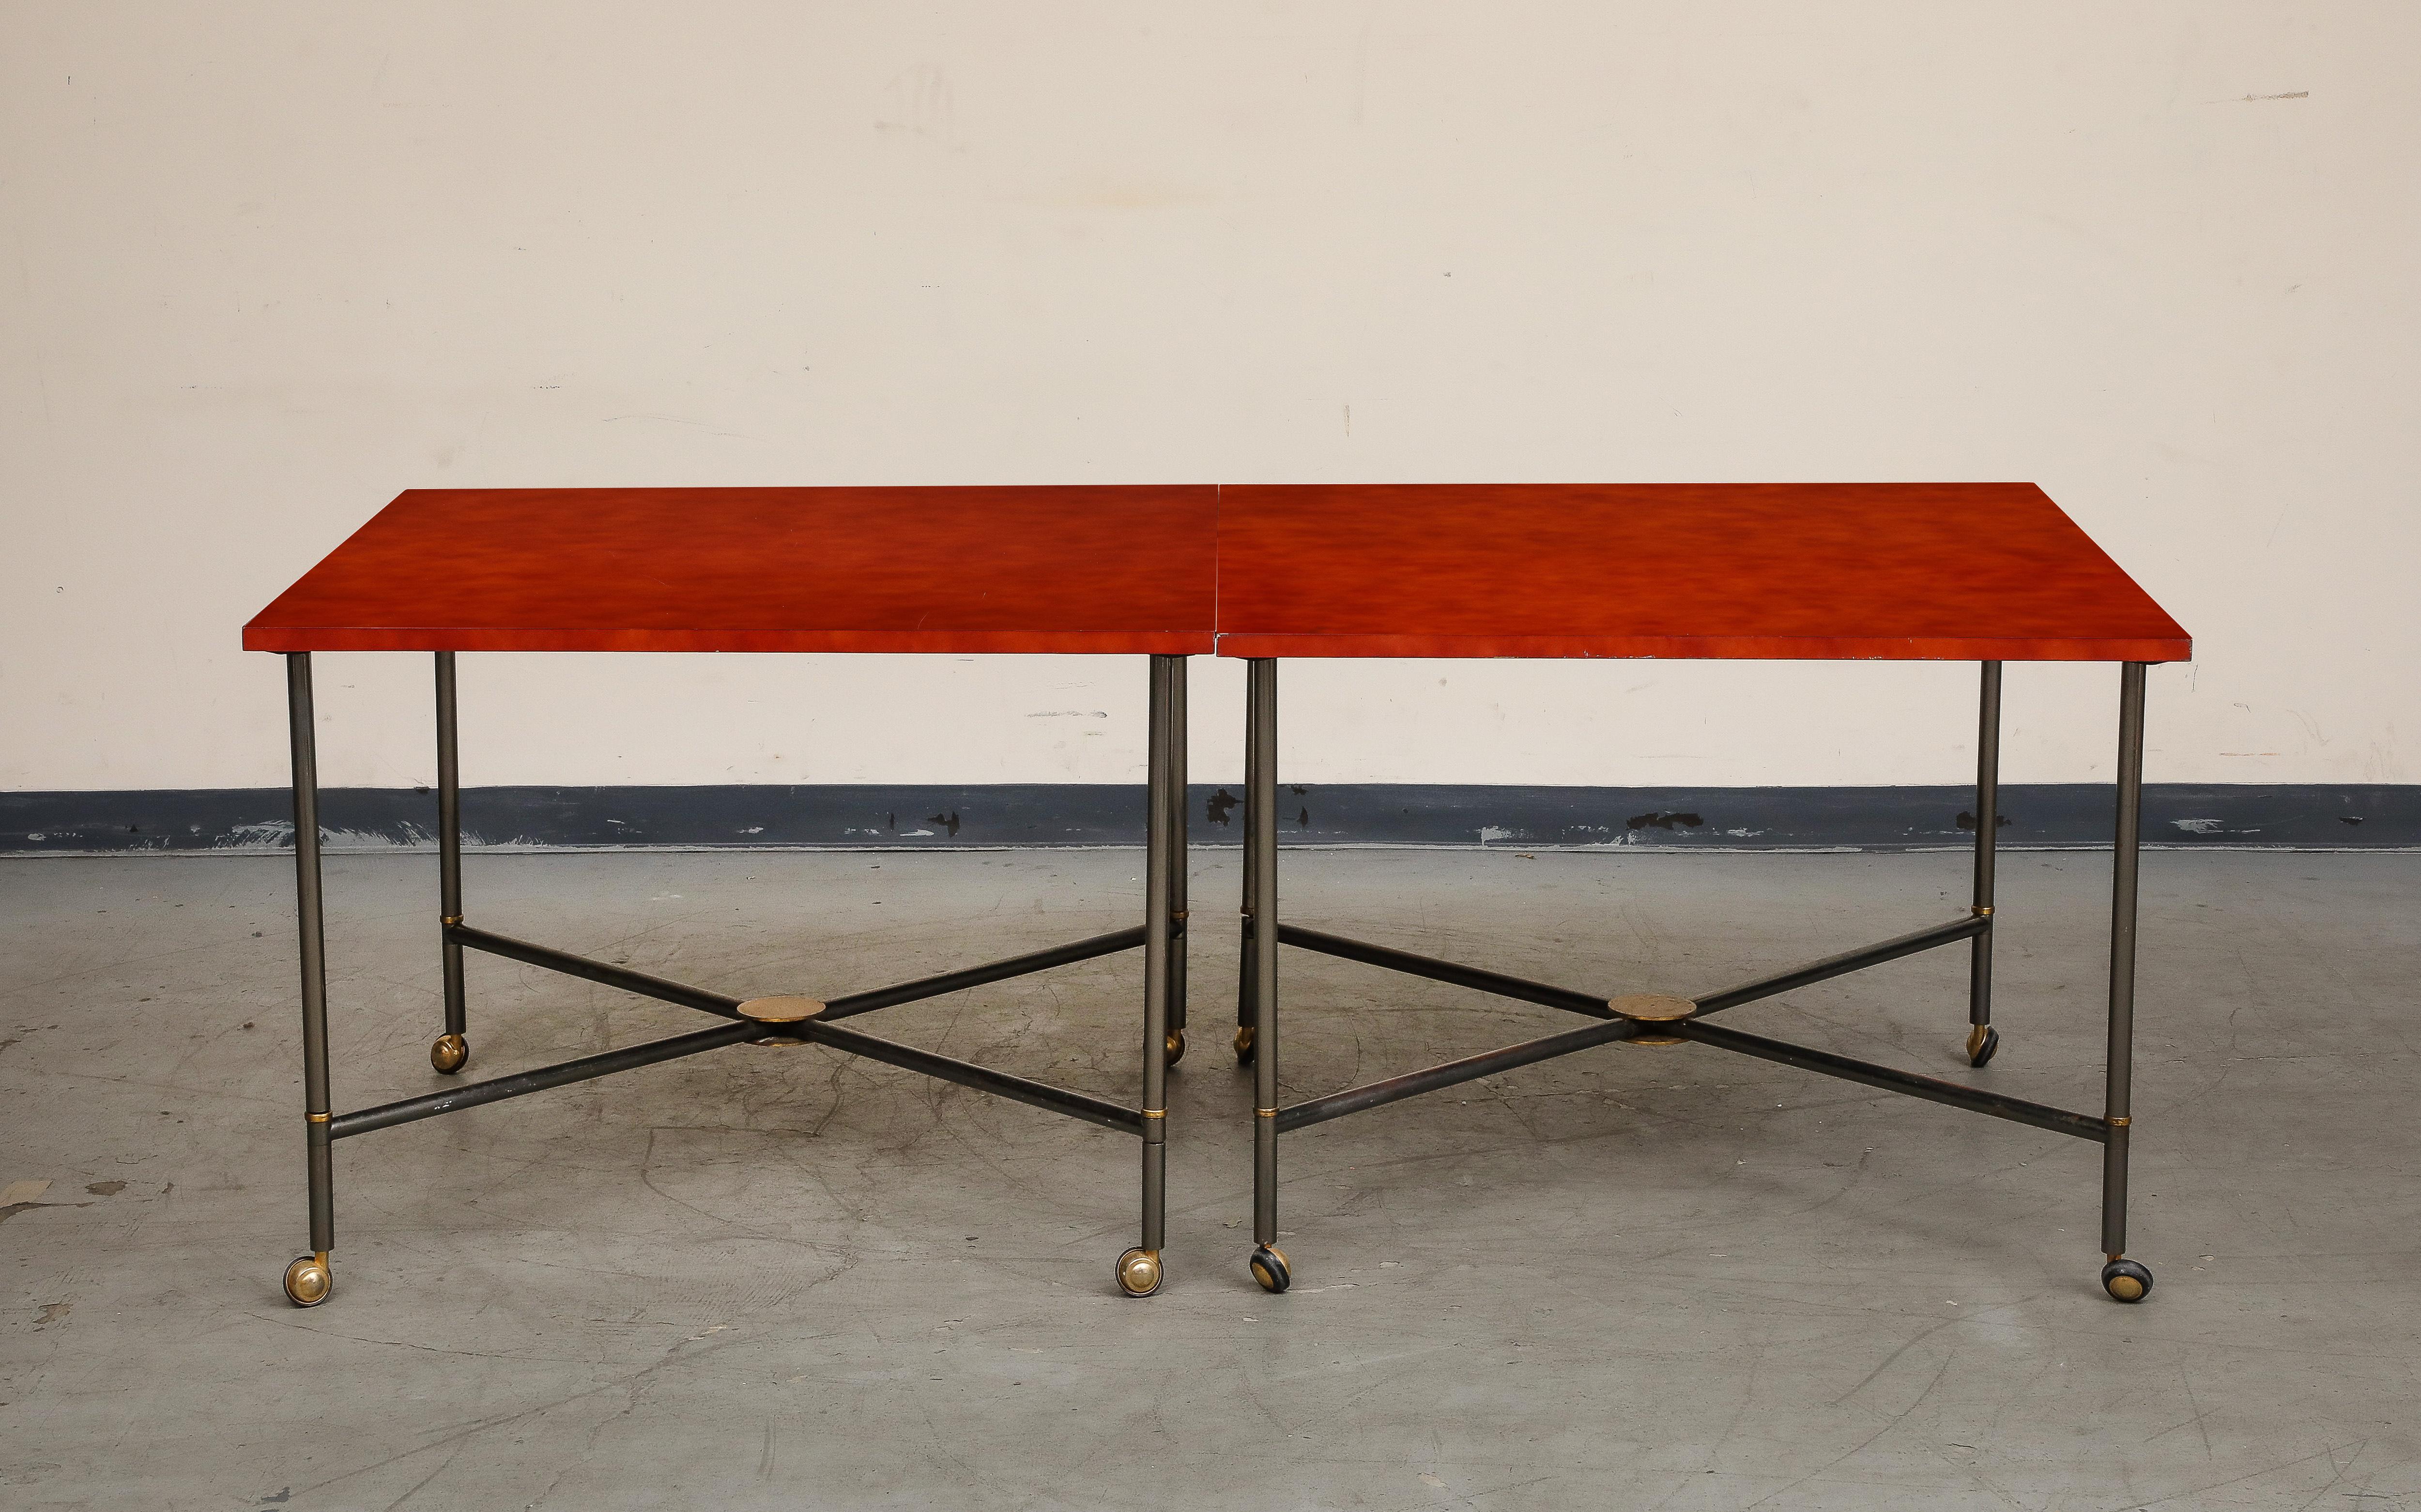 Table de salle à manger à roulettes en bronze du milieu du siècle, avec plateau en laque rouge et accents en laiton. Deux carrés se rejoignent pour former une table rectangulaire plus longue ; il y a des pièces supplémentaires qui pourraient